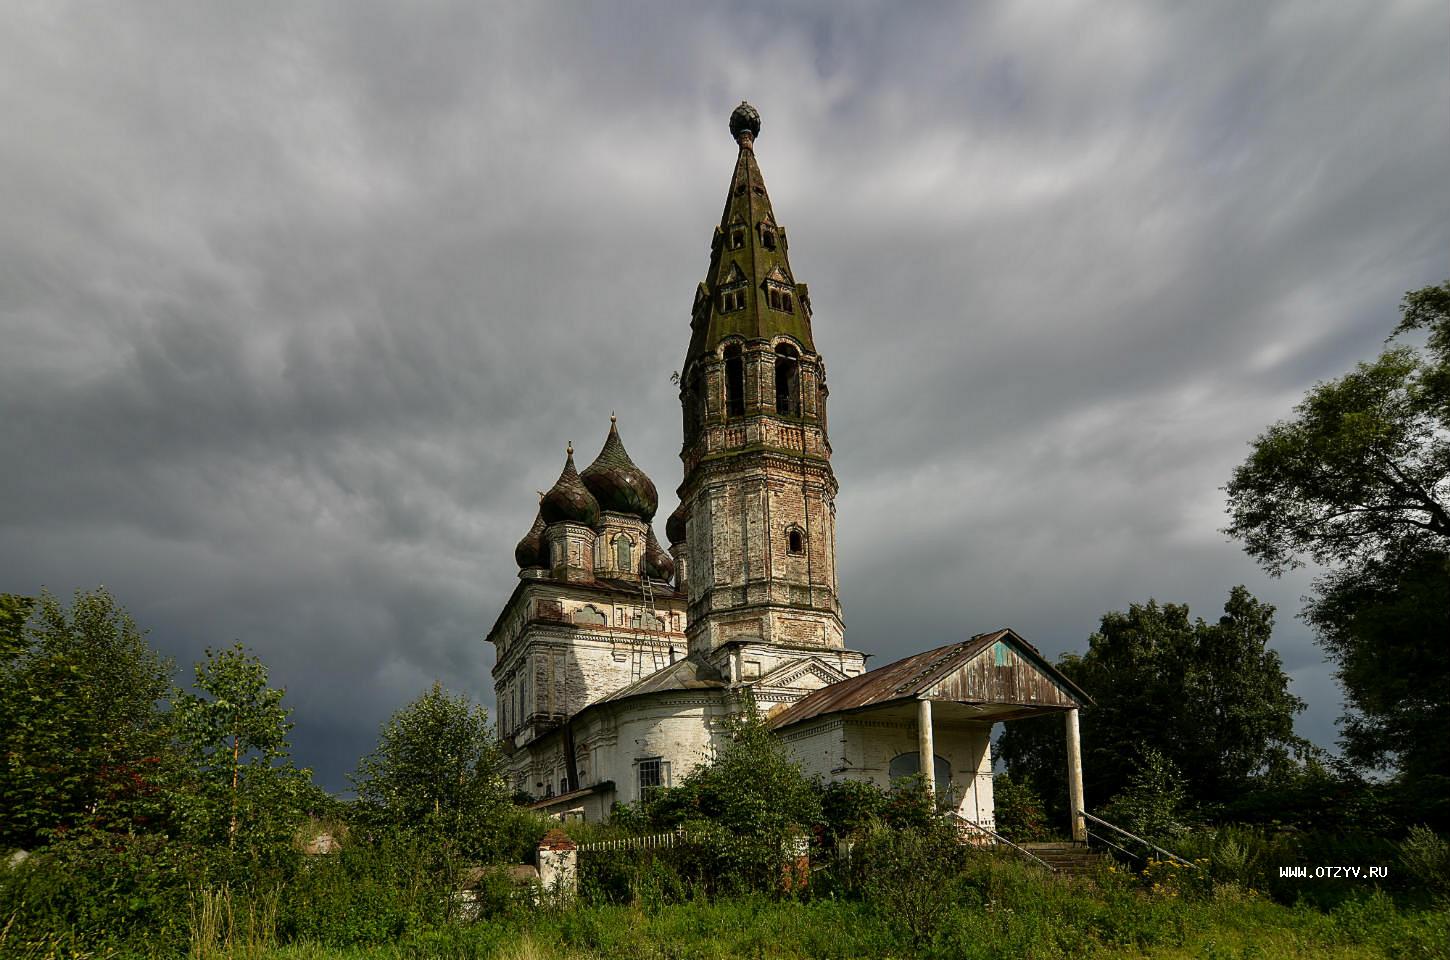 Протасово Костромская область Церковь